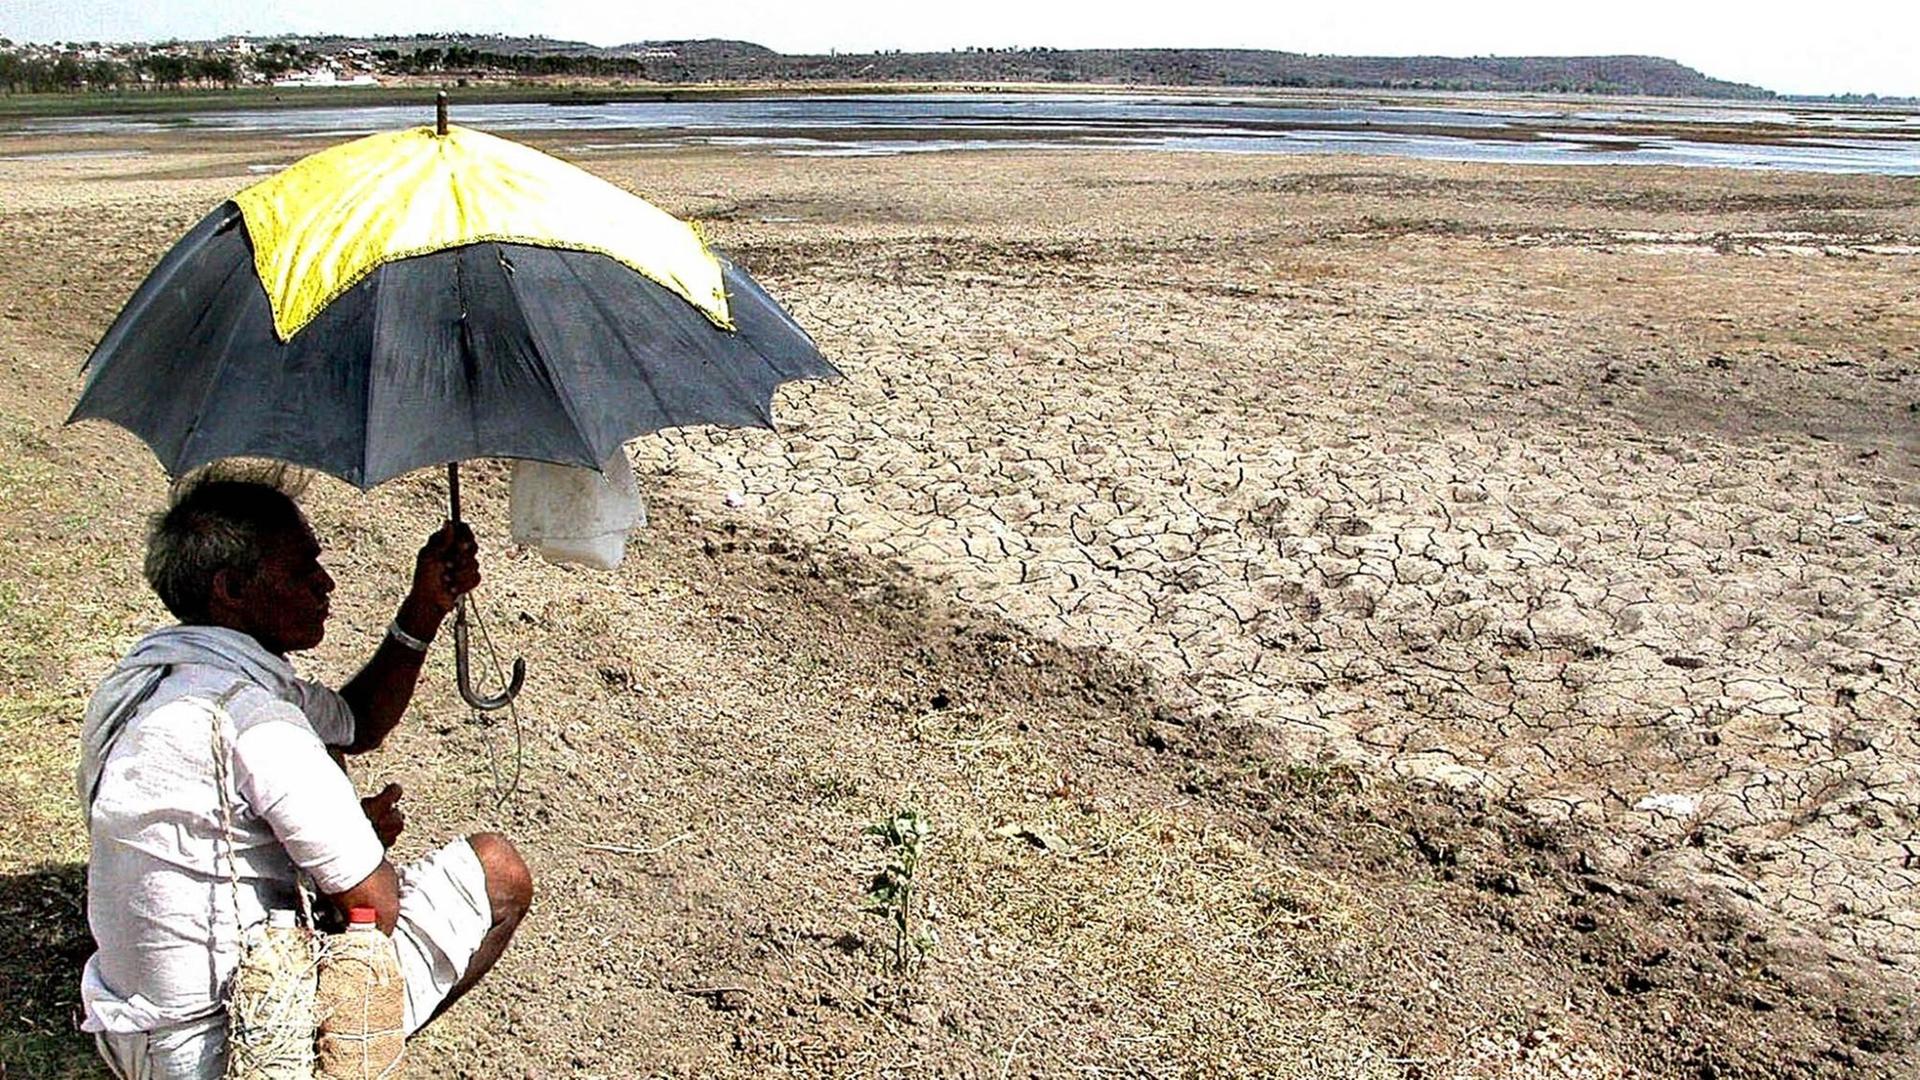 Ein Mann sitzt mit einem Sonnenschirm in der Hand am Ufer eines fast ausgetrockneten Sees im indischen Bhopal